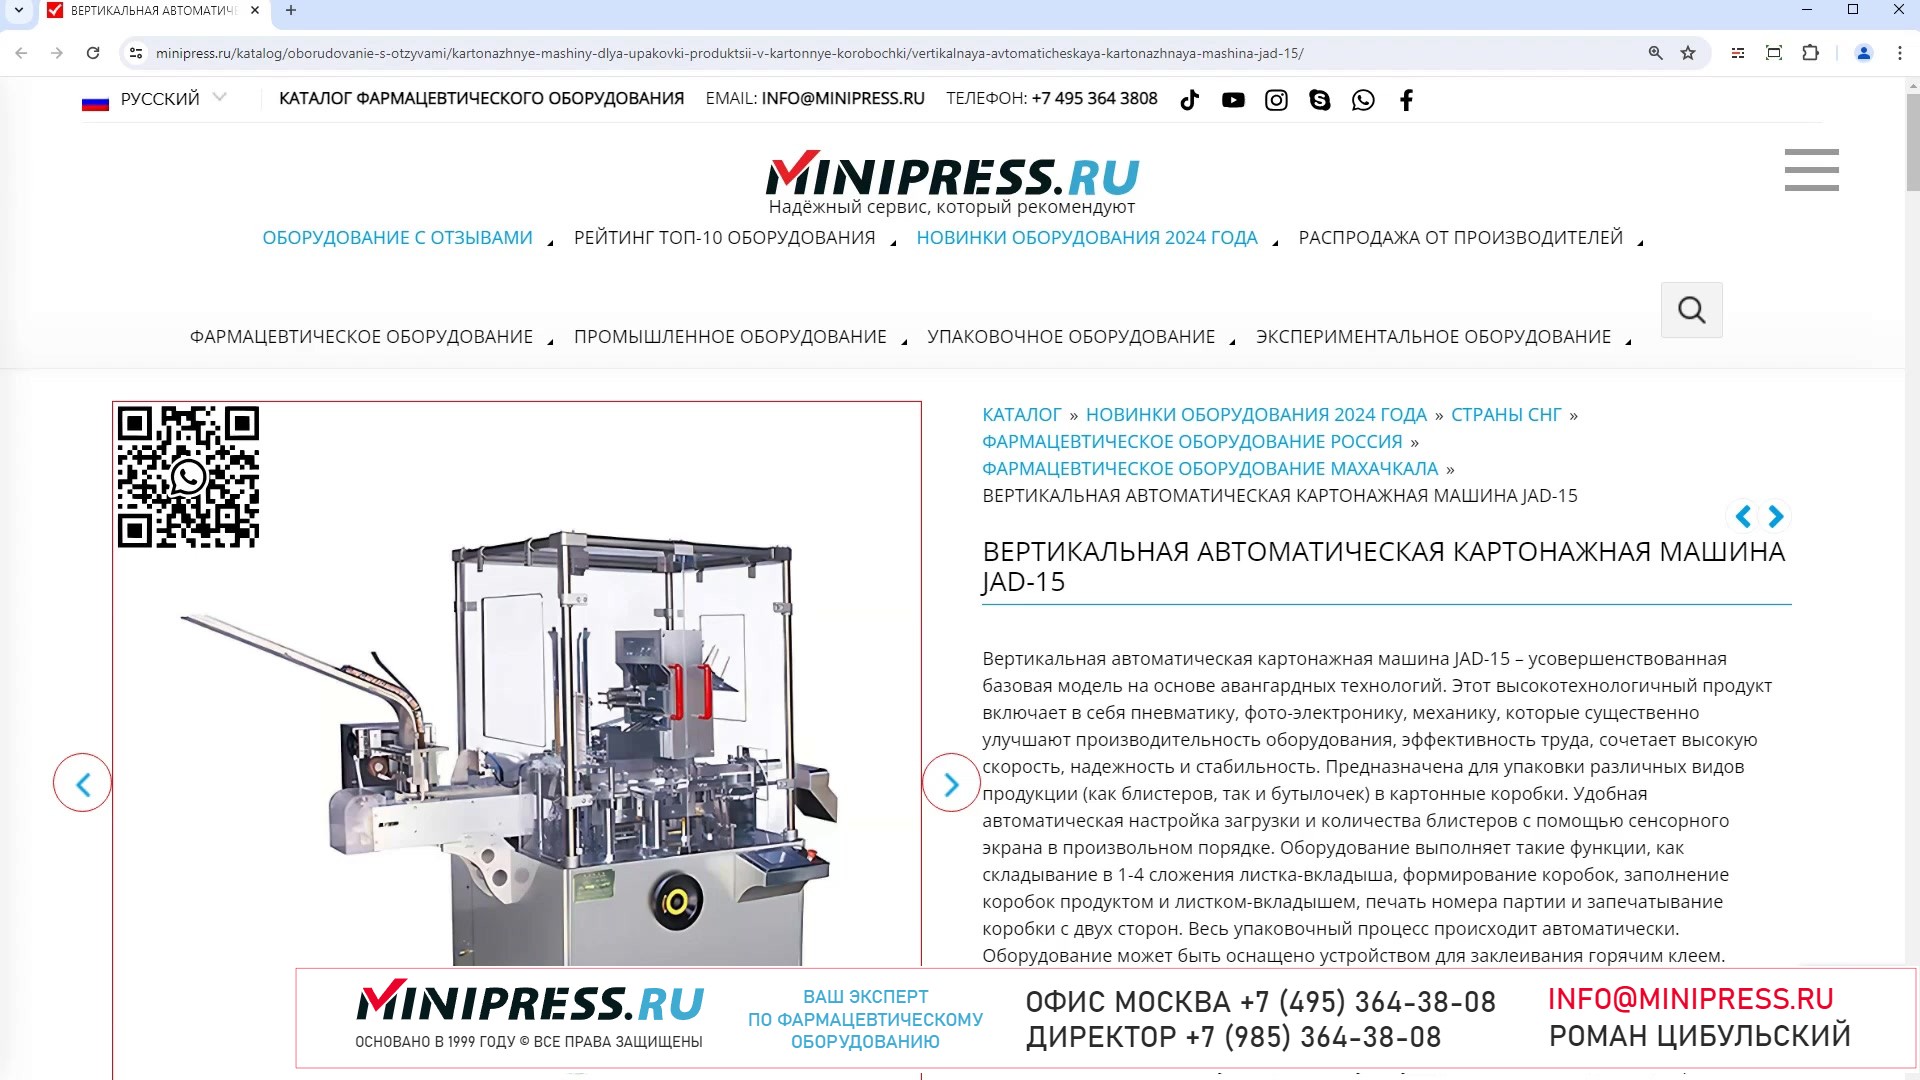 Minipress.ru Вертикальная автоматическая картонажная машина JAD-15